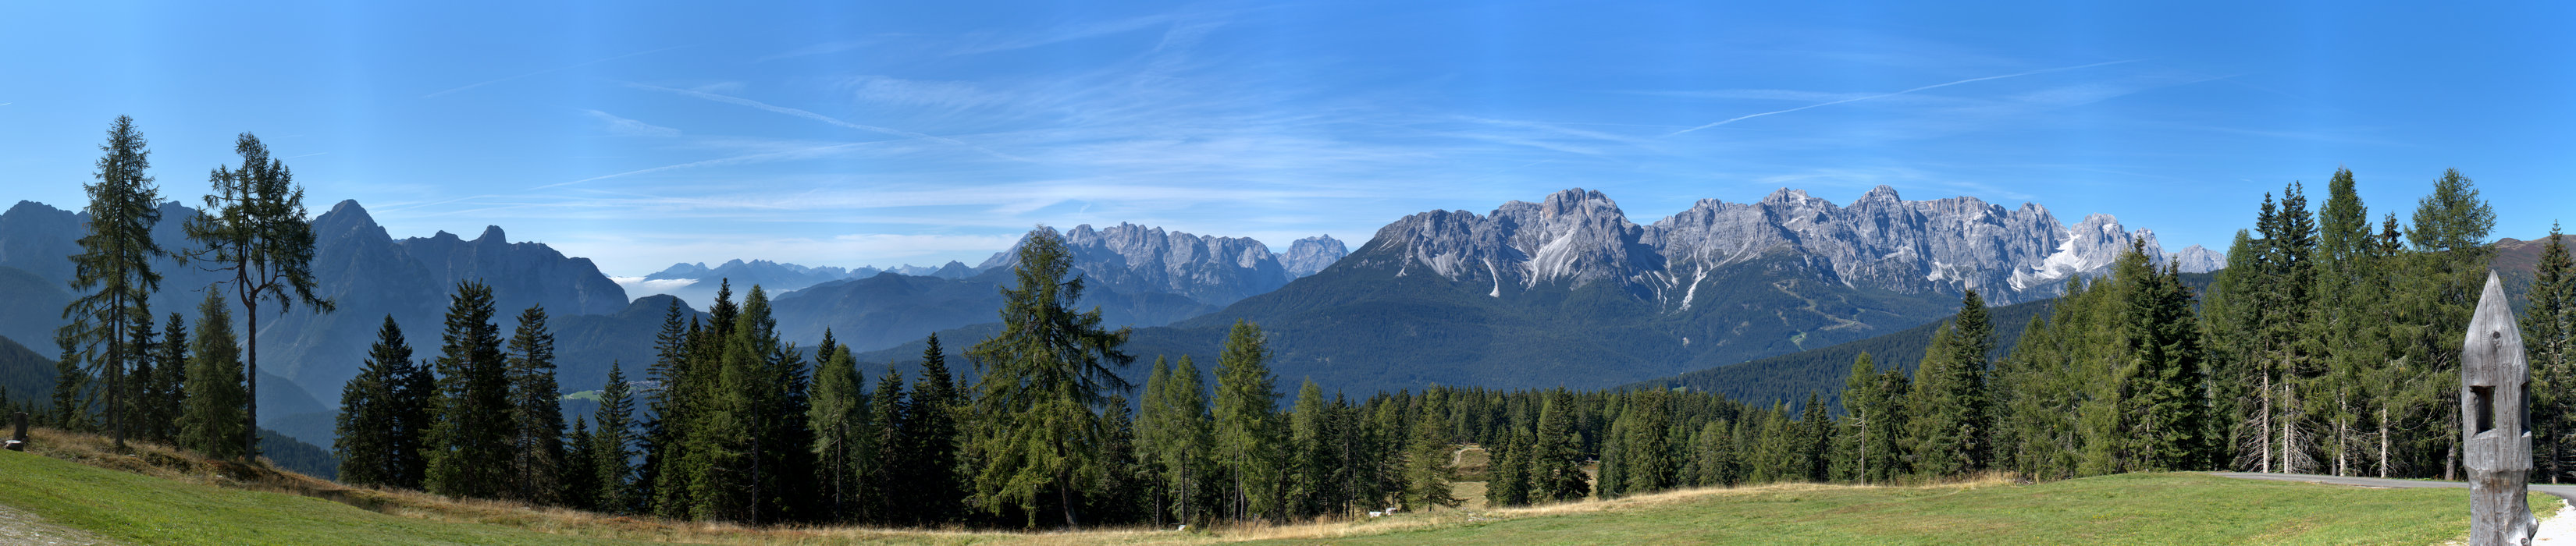 Monte Zovo a Costa di San Nicolò di Comelico, Belluno Dolomiti